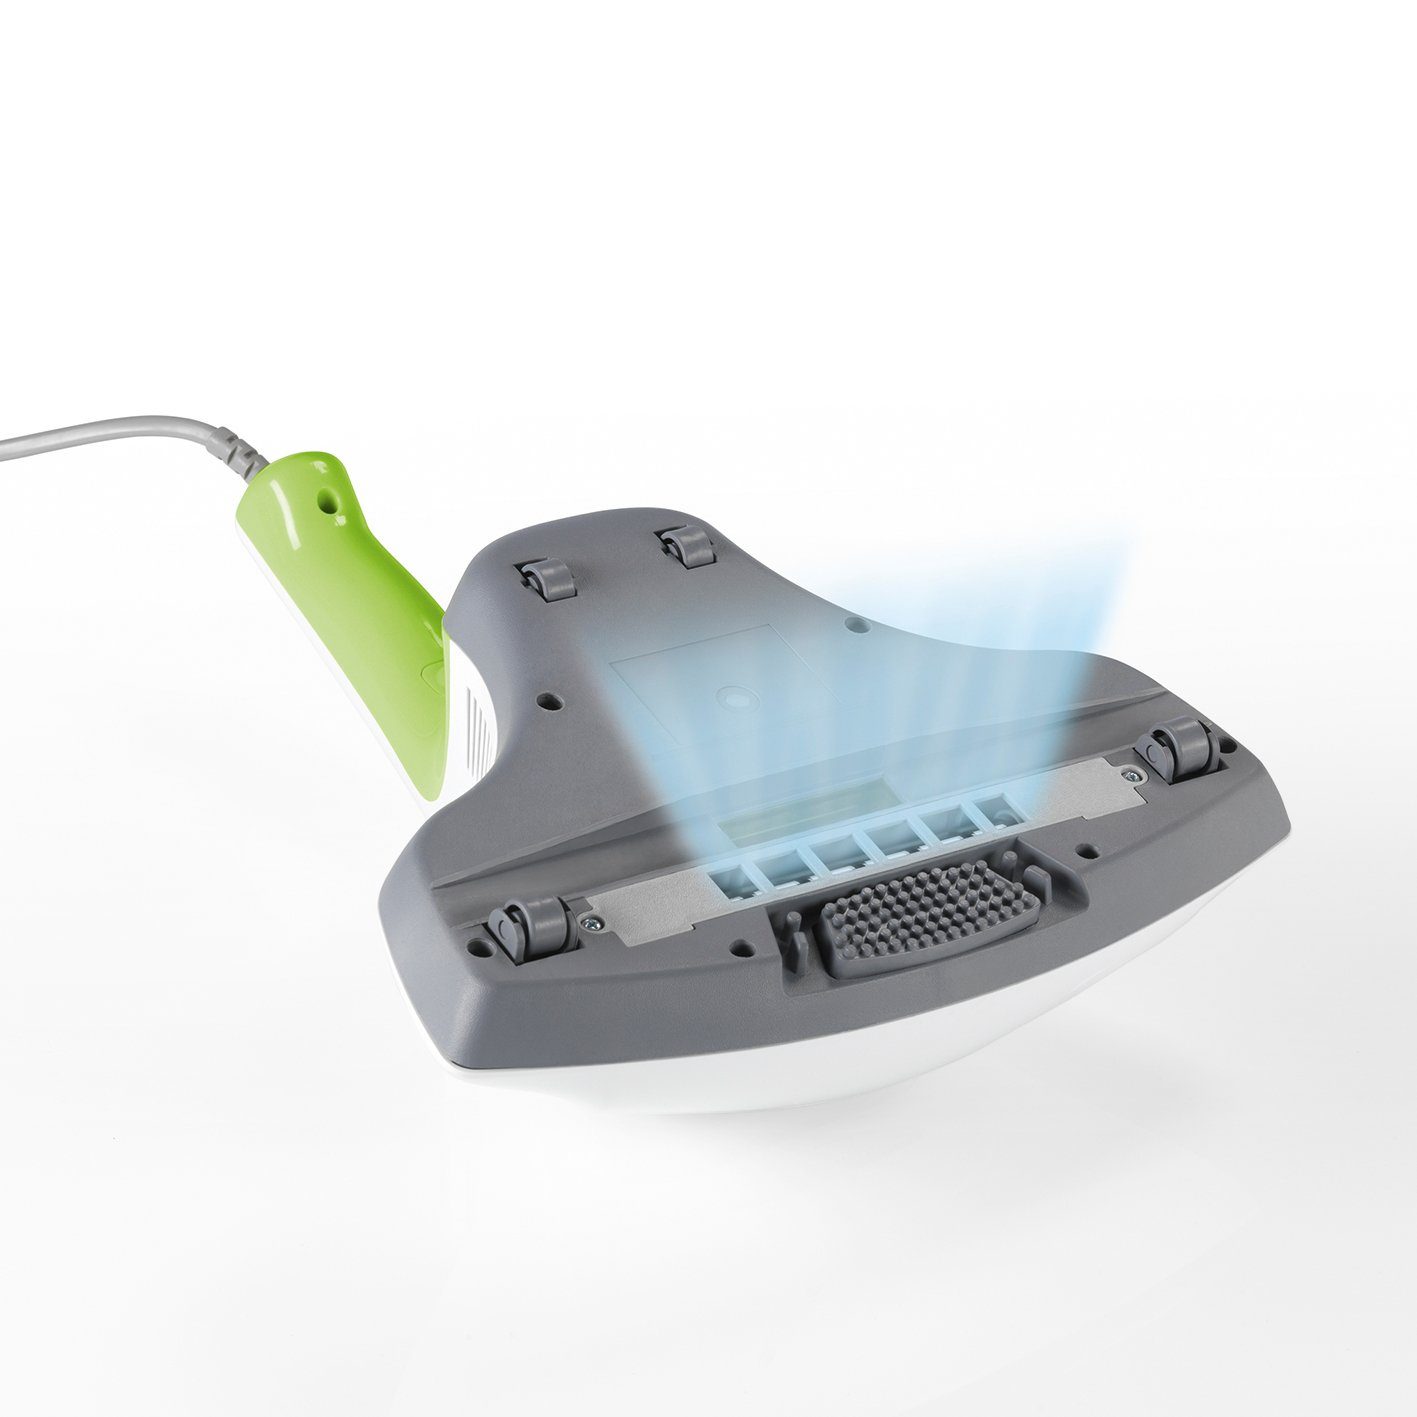 CLEANmaxx Matratzenreinigungsgerät Weiß/Limegreen UV-C-Licht 300W mit Milben-Handstaubsauger 